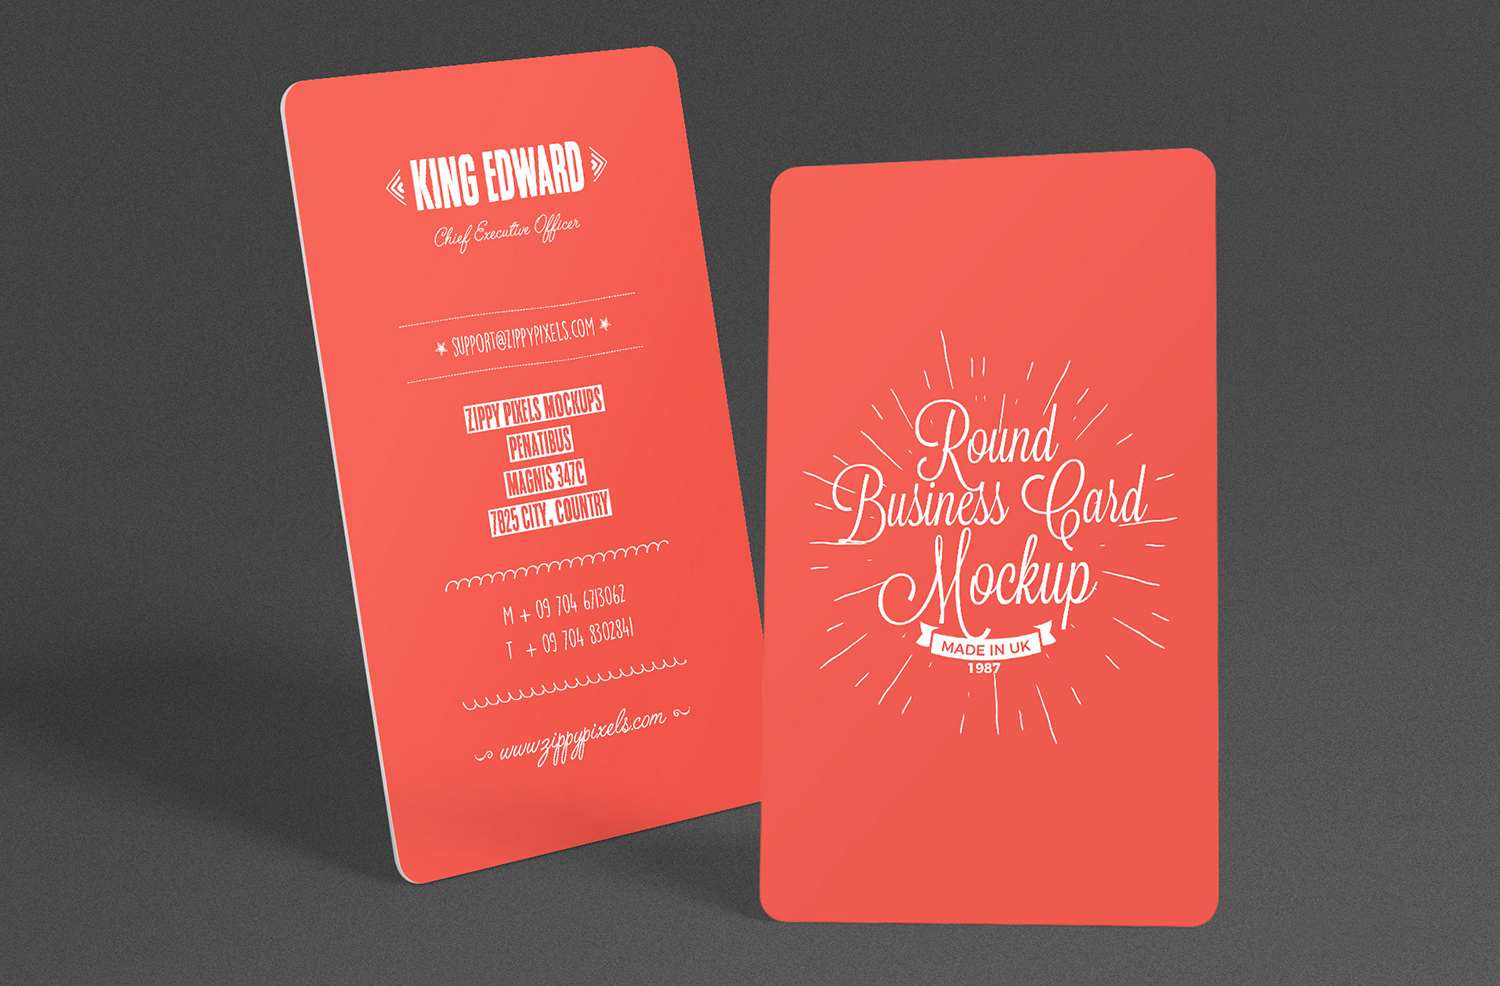 Free Stylish Round Business Card Mockup PSD